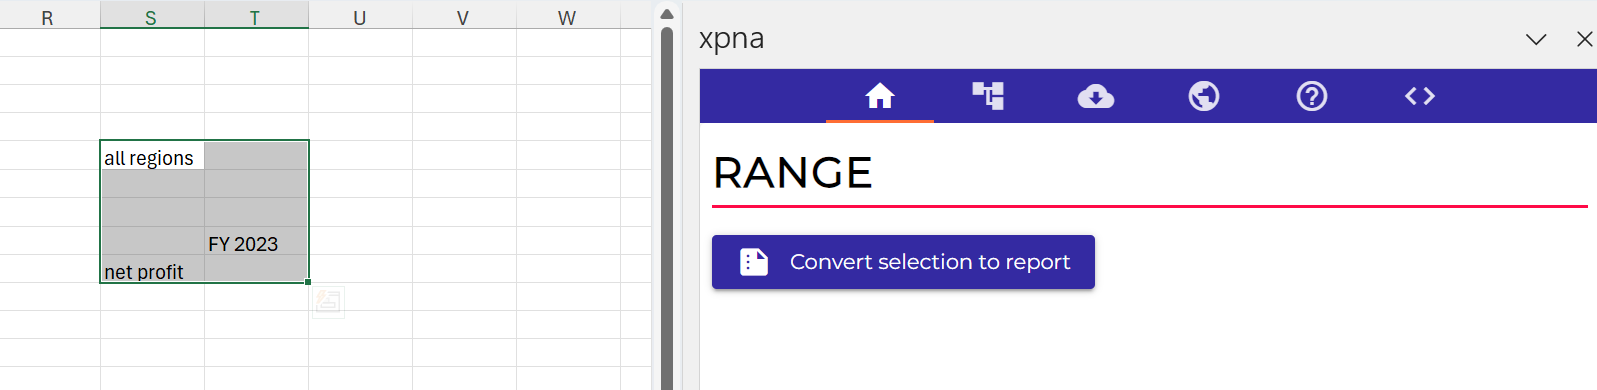 xpna customized reports